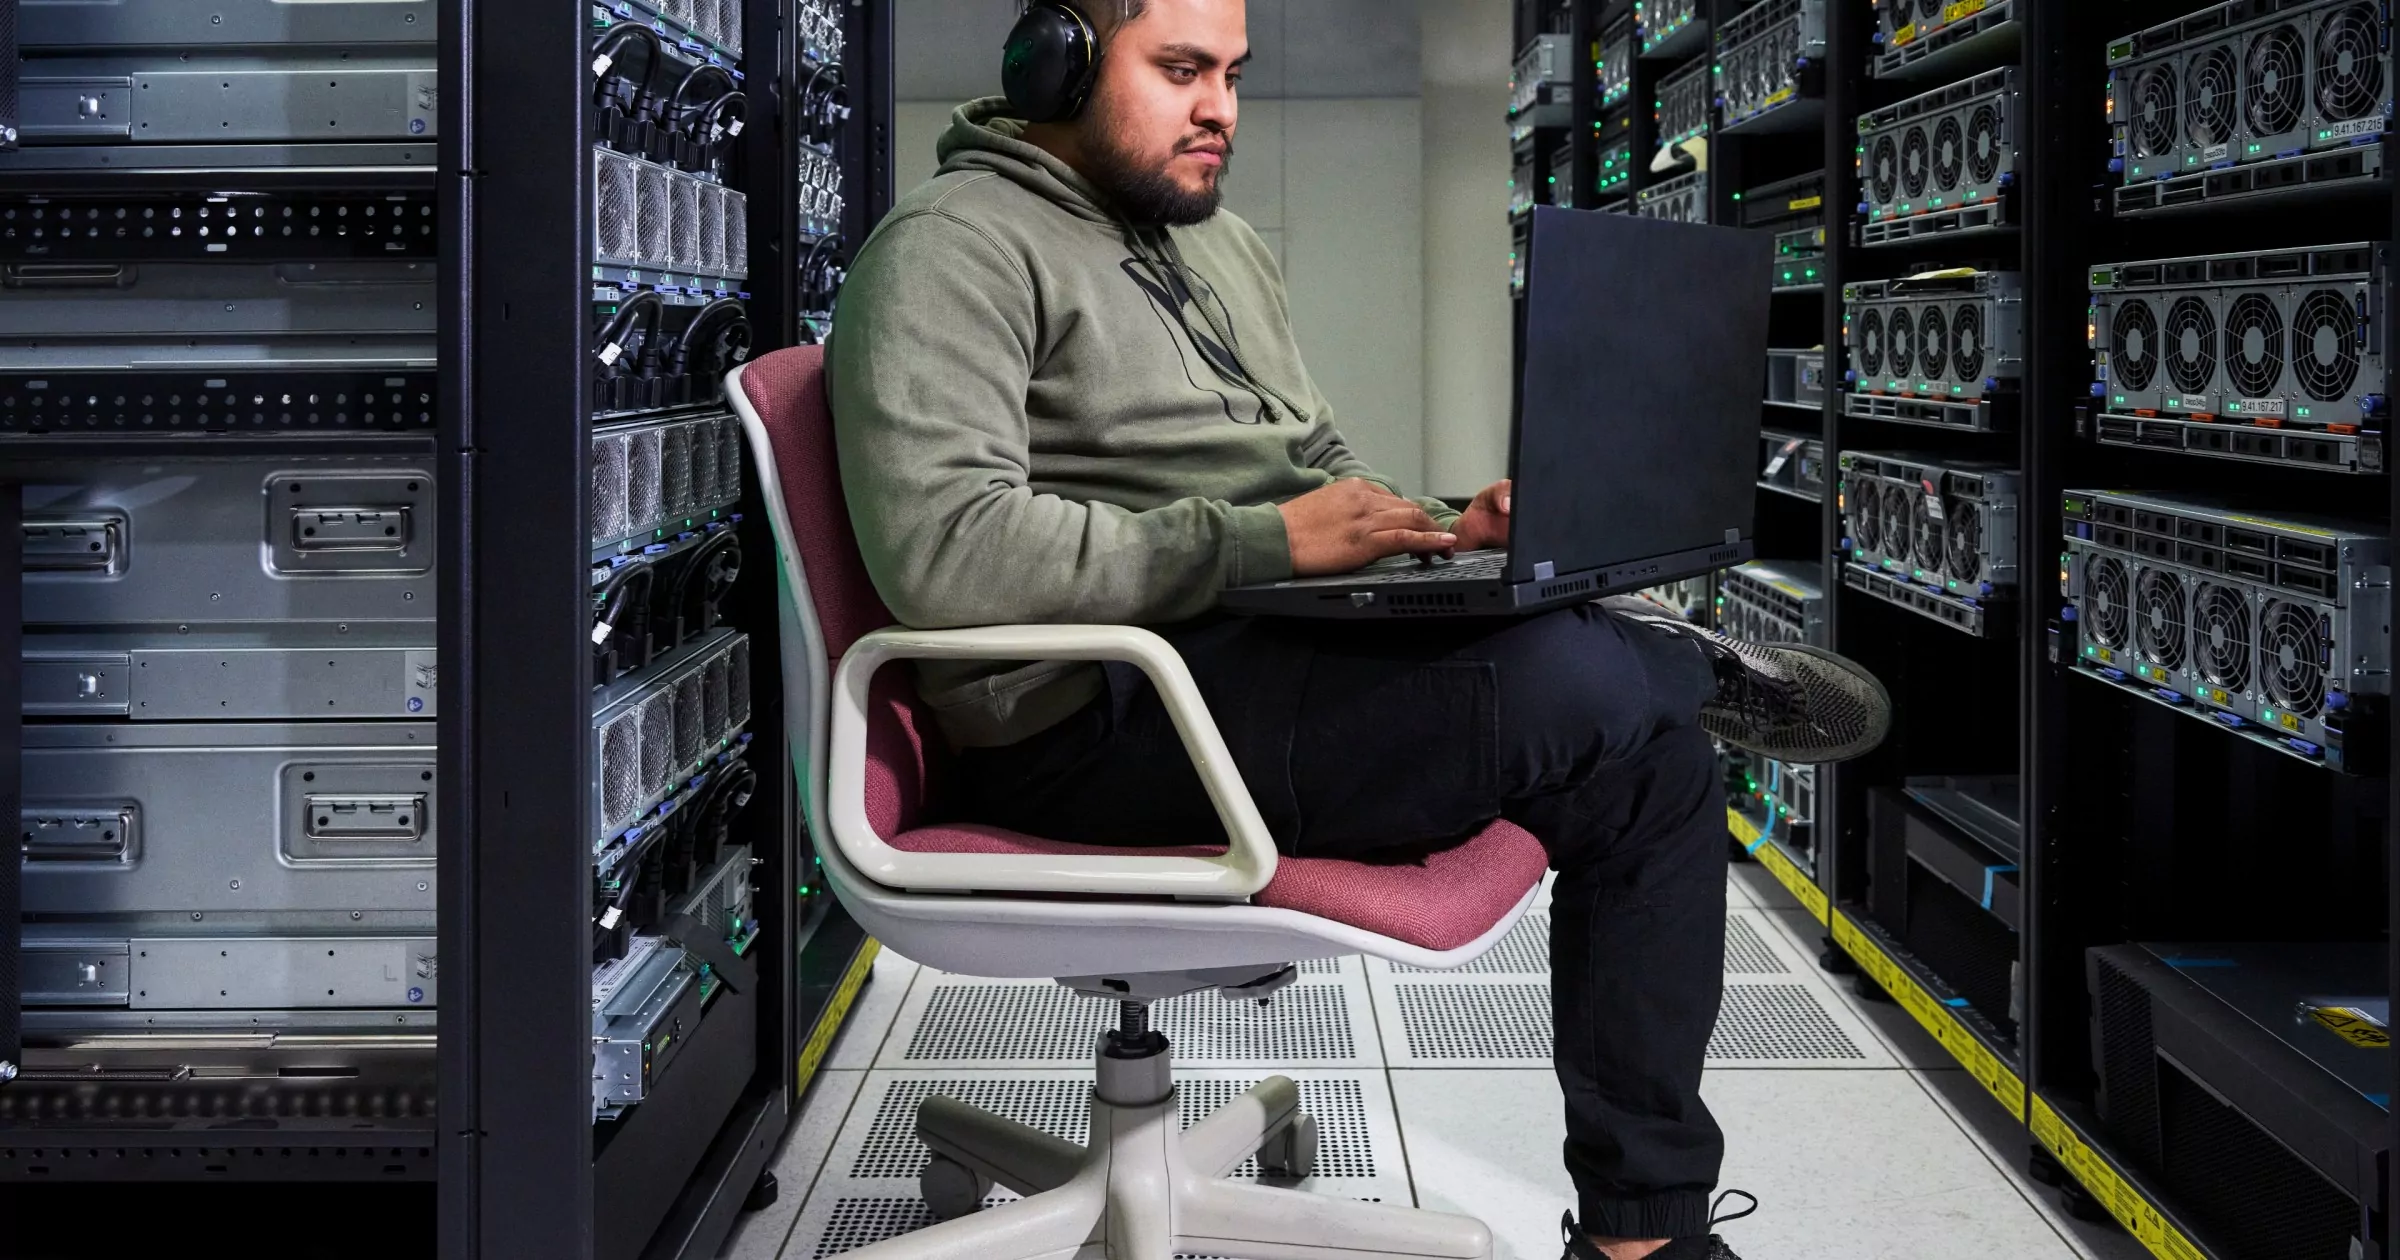 डेटा स्टोरेज सुविधा में एक कुर्सी पर हेडफोन लगाए बैठा व्यक्ति और लैपटॉप पर काम कर रहा है